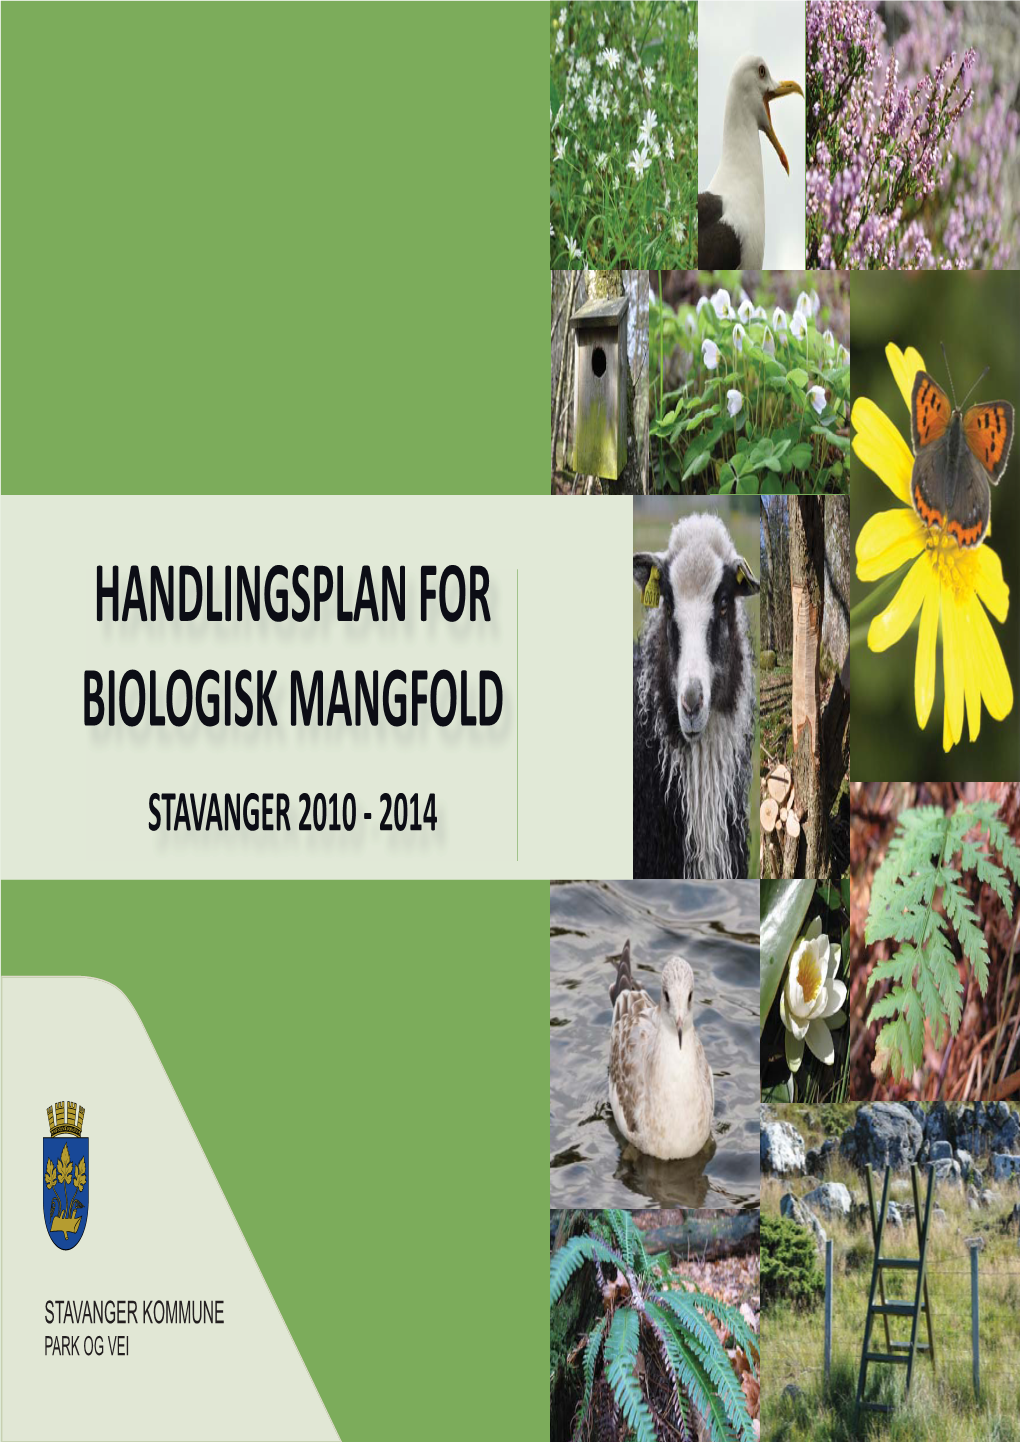 Handlingsplan for Biologisk Mangfold Stavanger 2010 - 2014